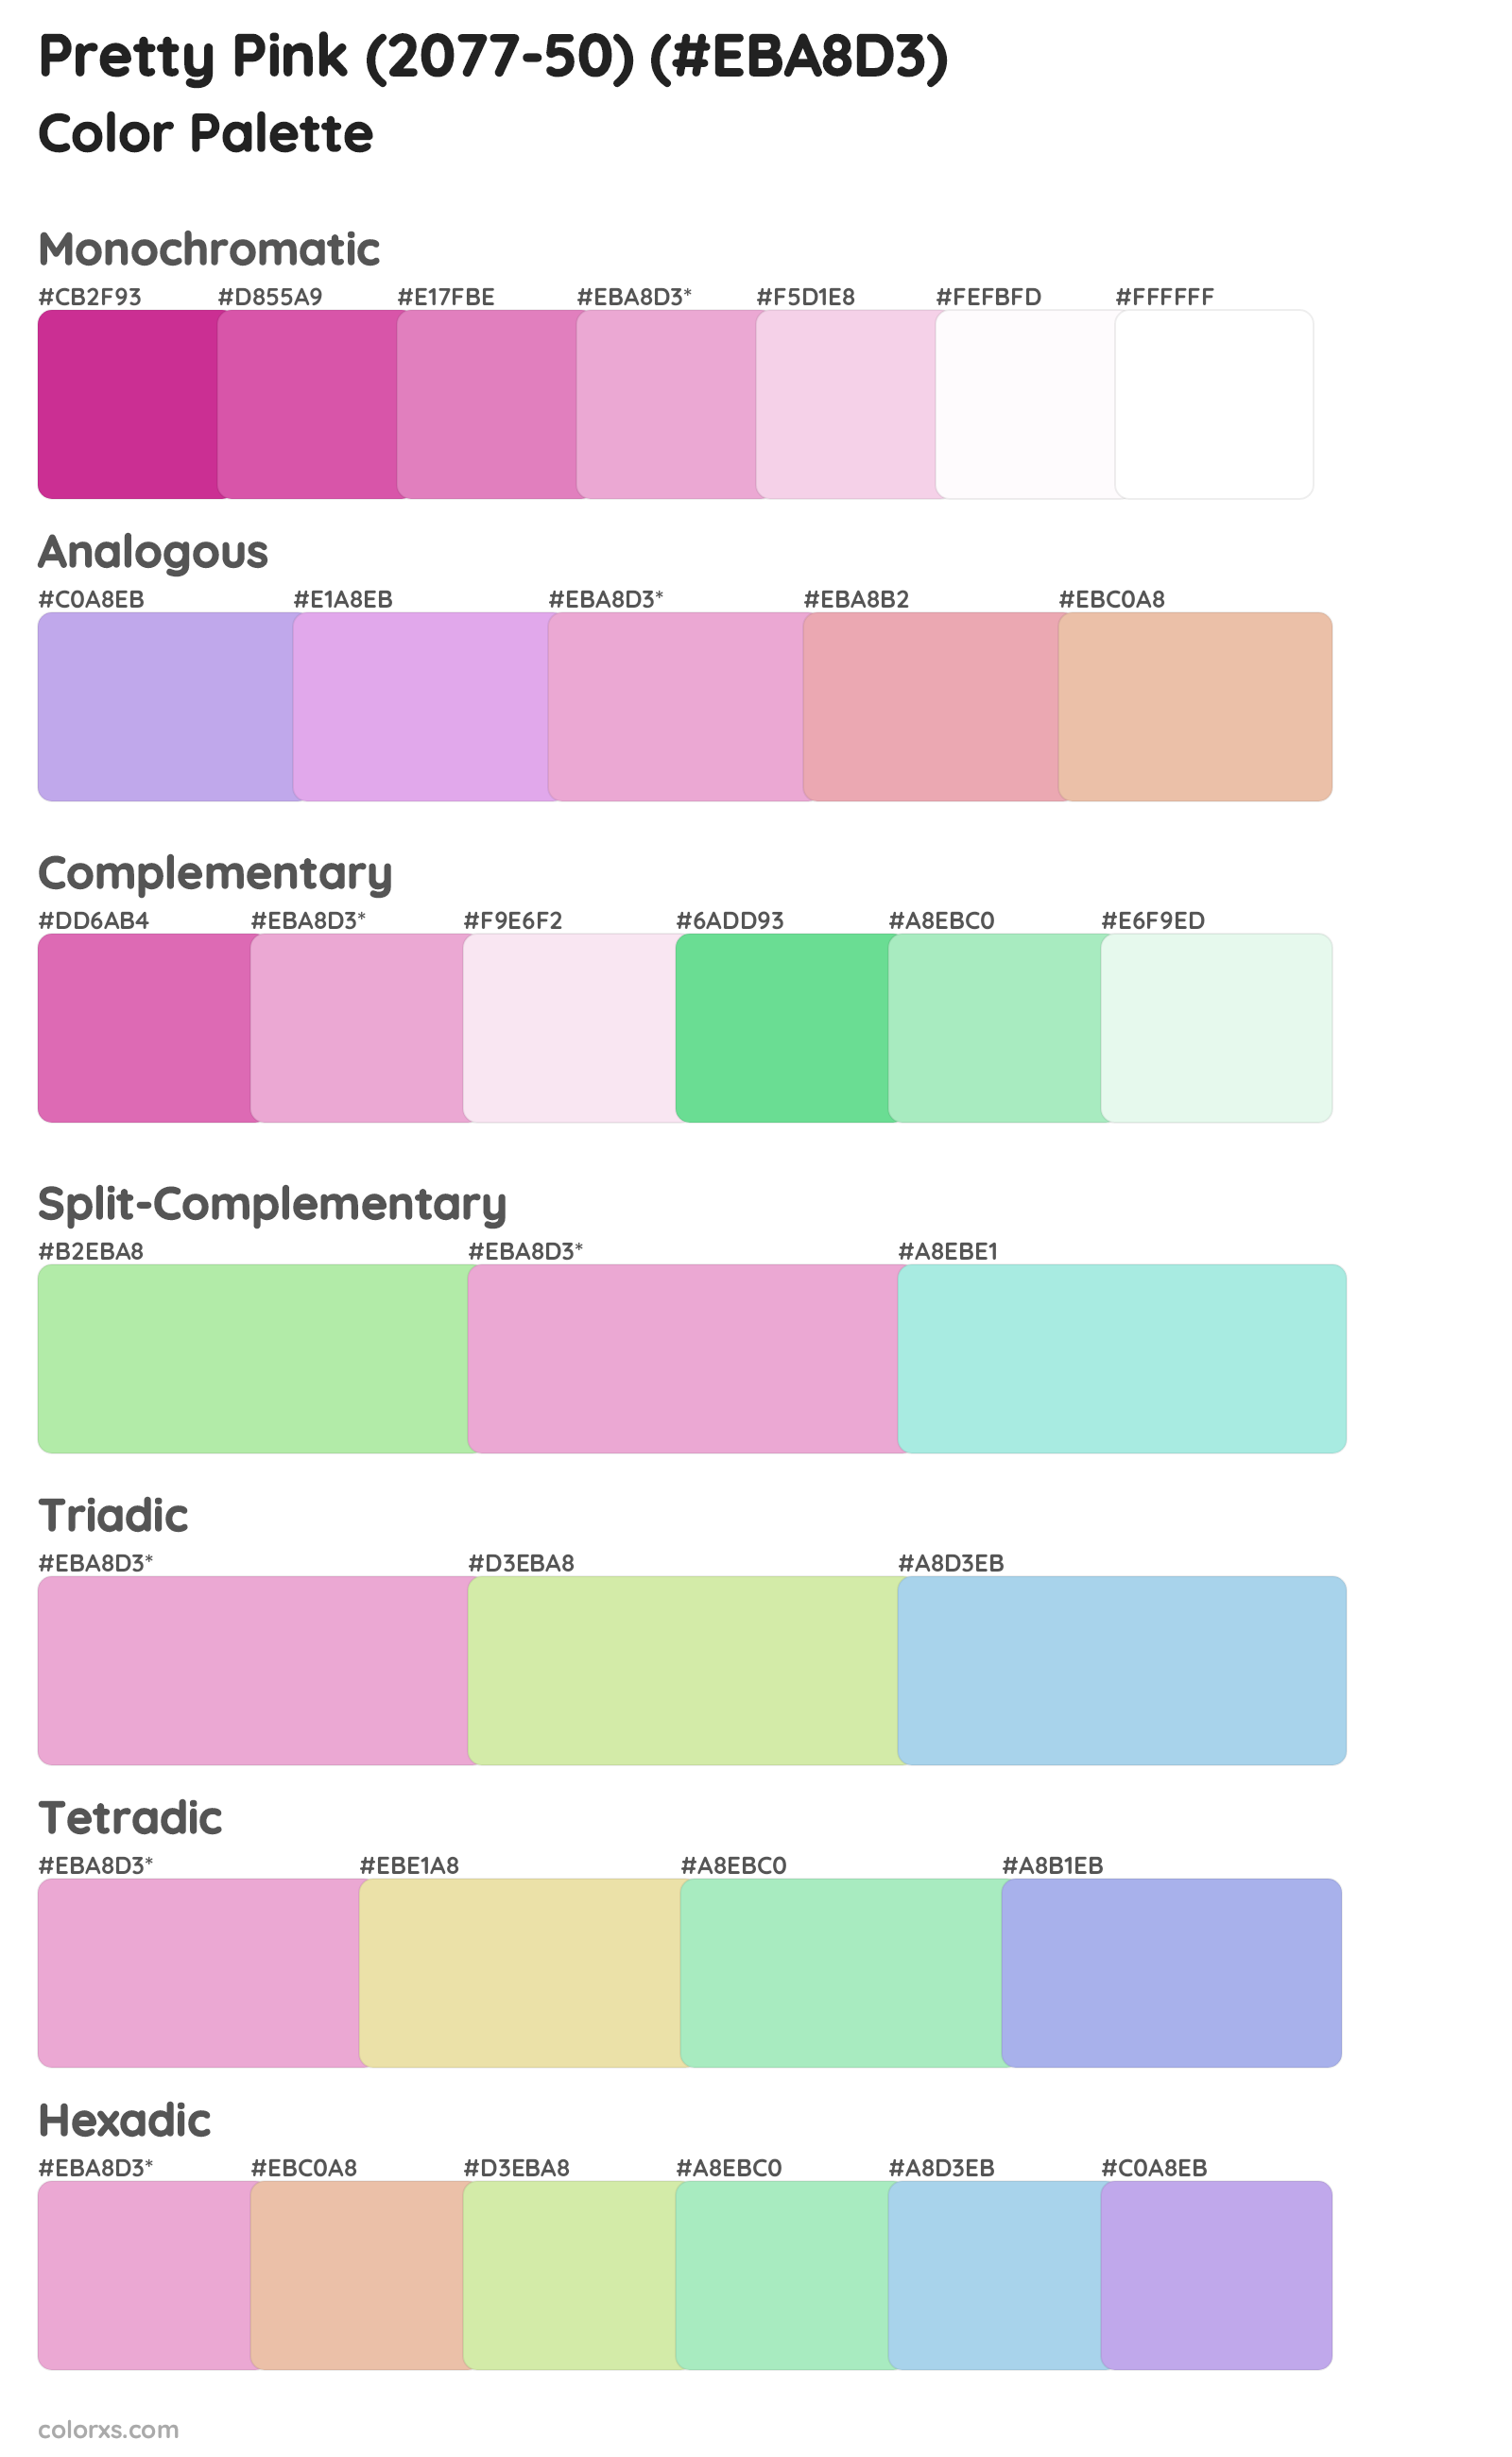 Pretty Pink (2077-50) Color Scheme Palettes